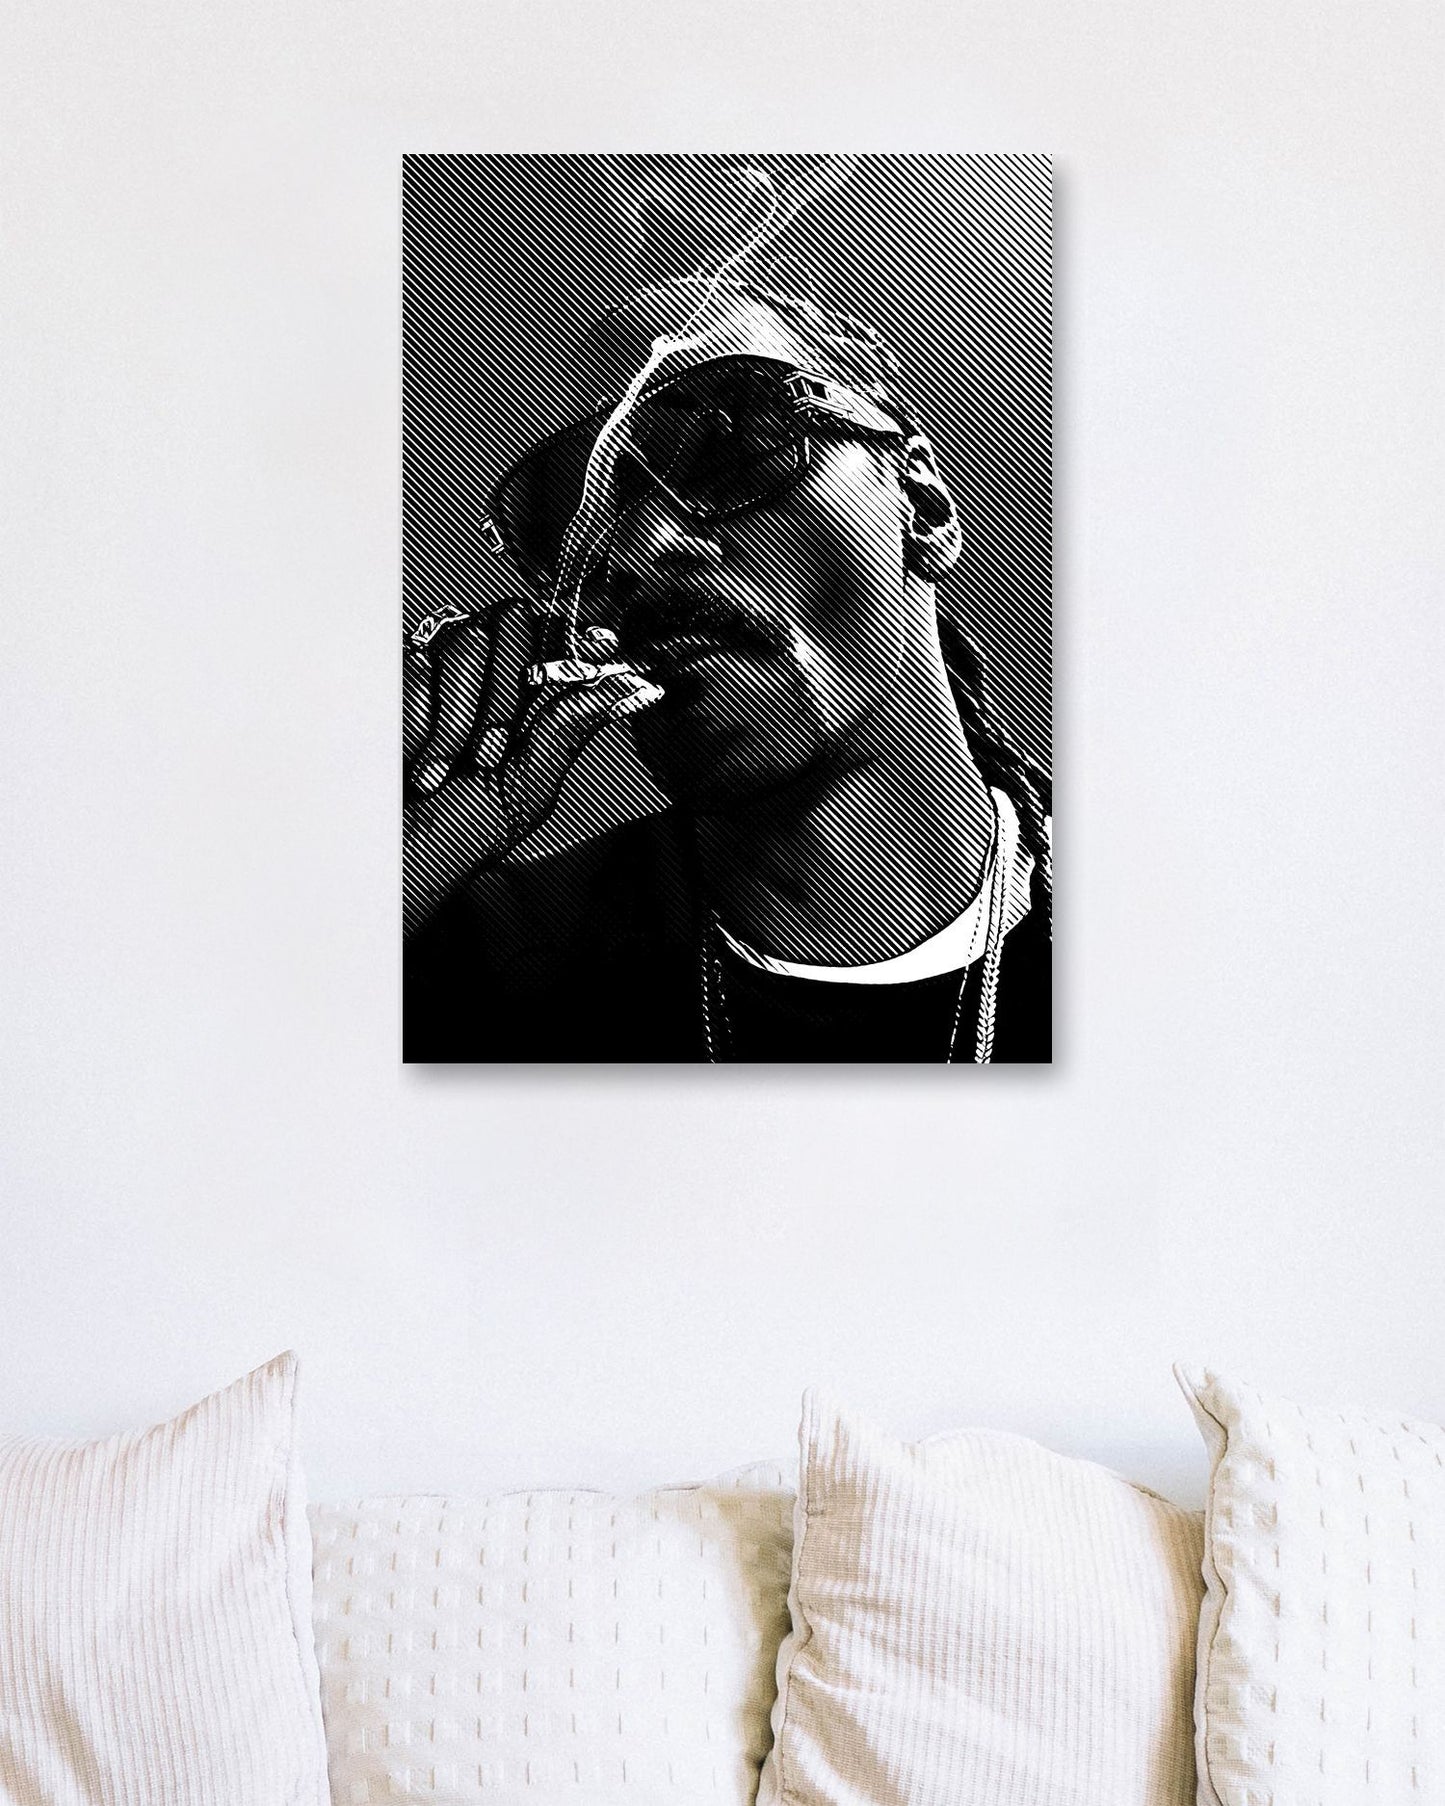 Snoop Dogg - @Vecto